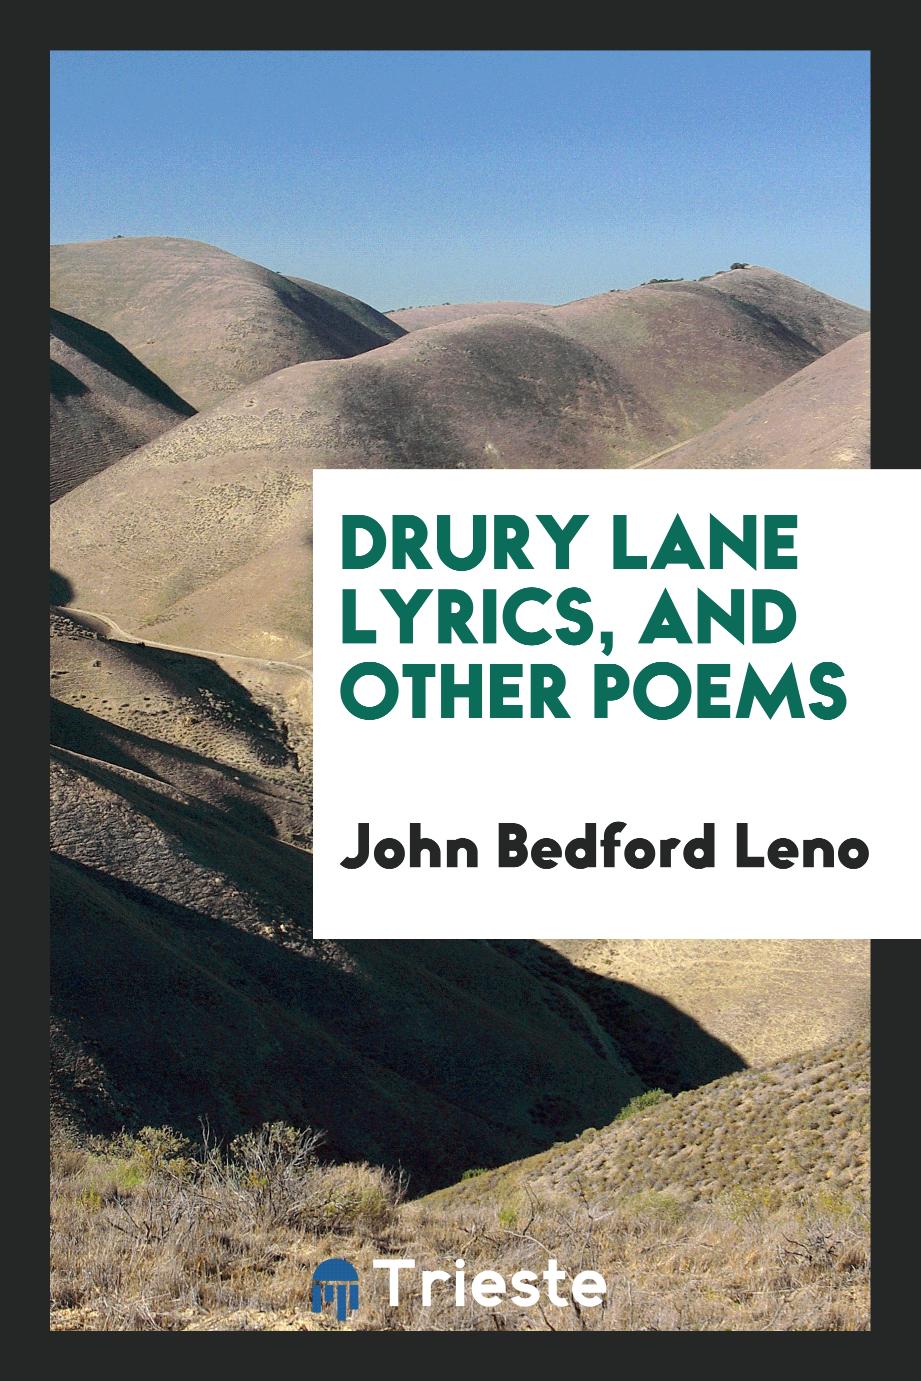 Drury Lane lyrics, and other poems